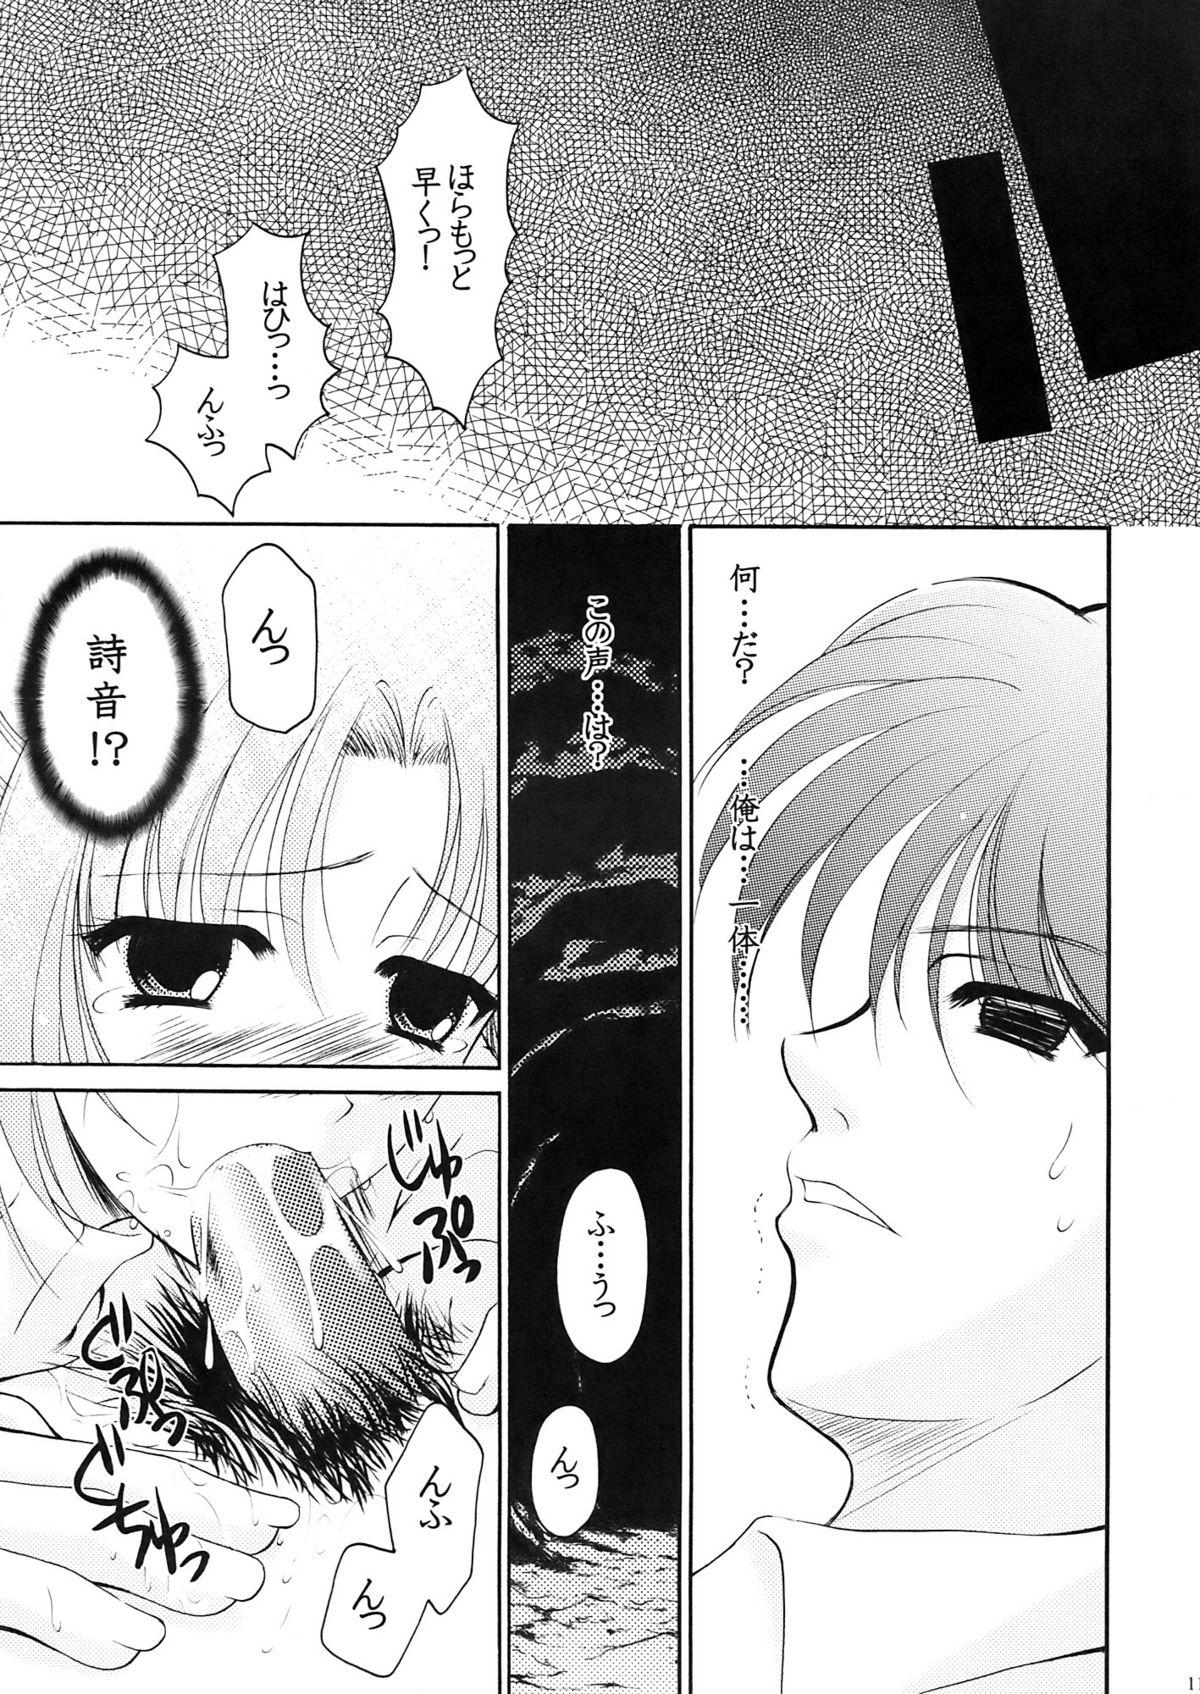 Fantasy Massage Higupan 3 - Higurashi no naku koro ni Cream - Page 10